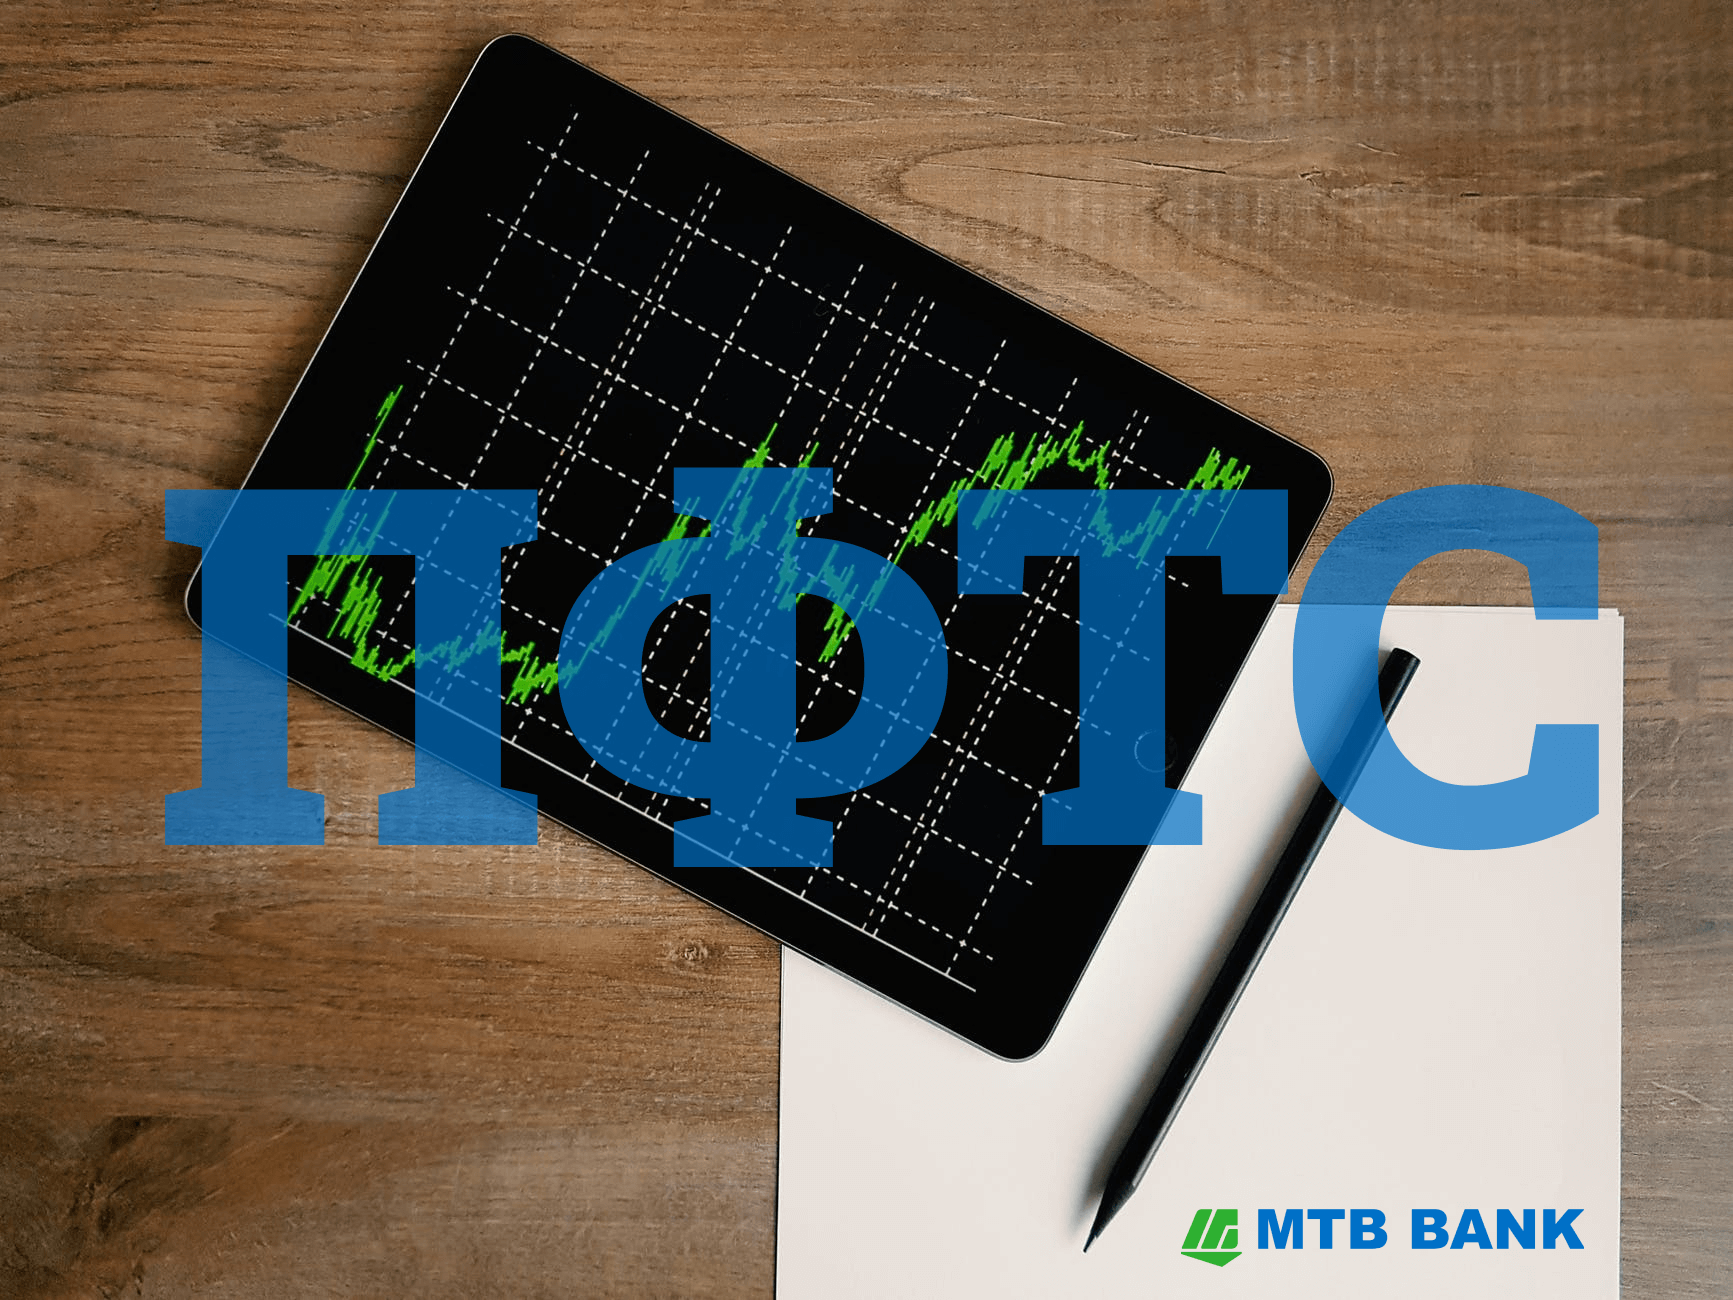 МТБ БАНК вошел в ТОП-5 торговцев муниципальными облигациями и в ТОП-10 торговцев акциями предприятий на фондовой бирже ПФТС  - фото - mtb.ua